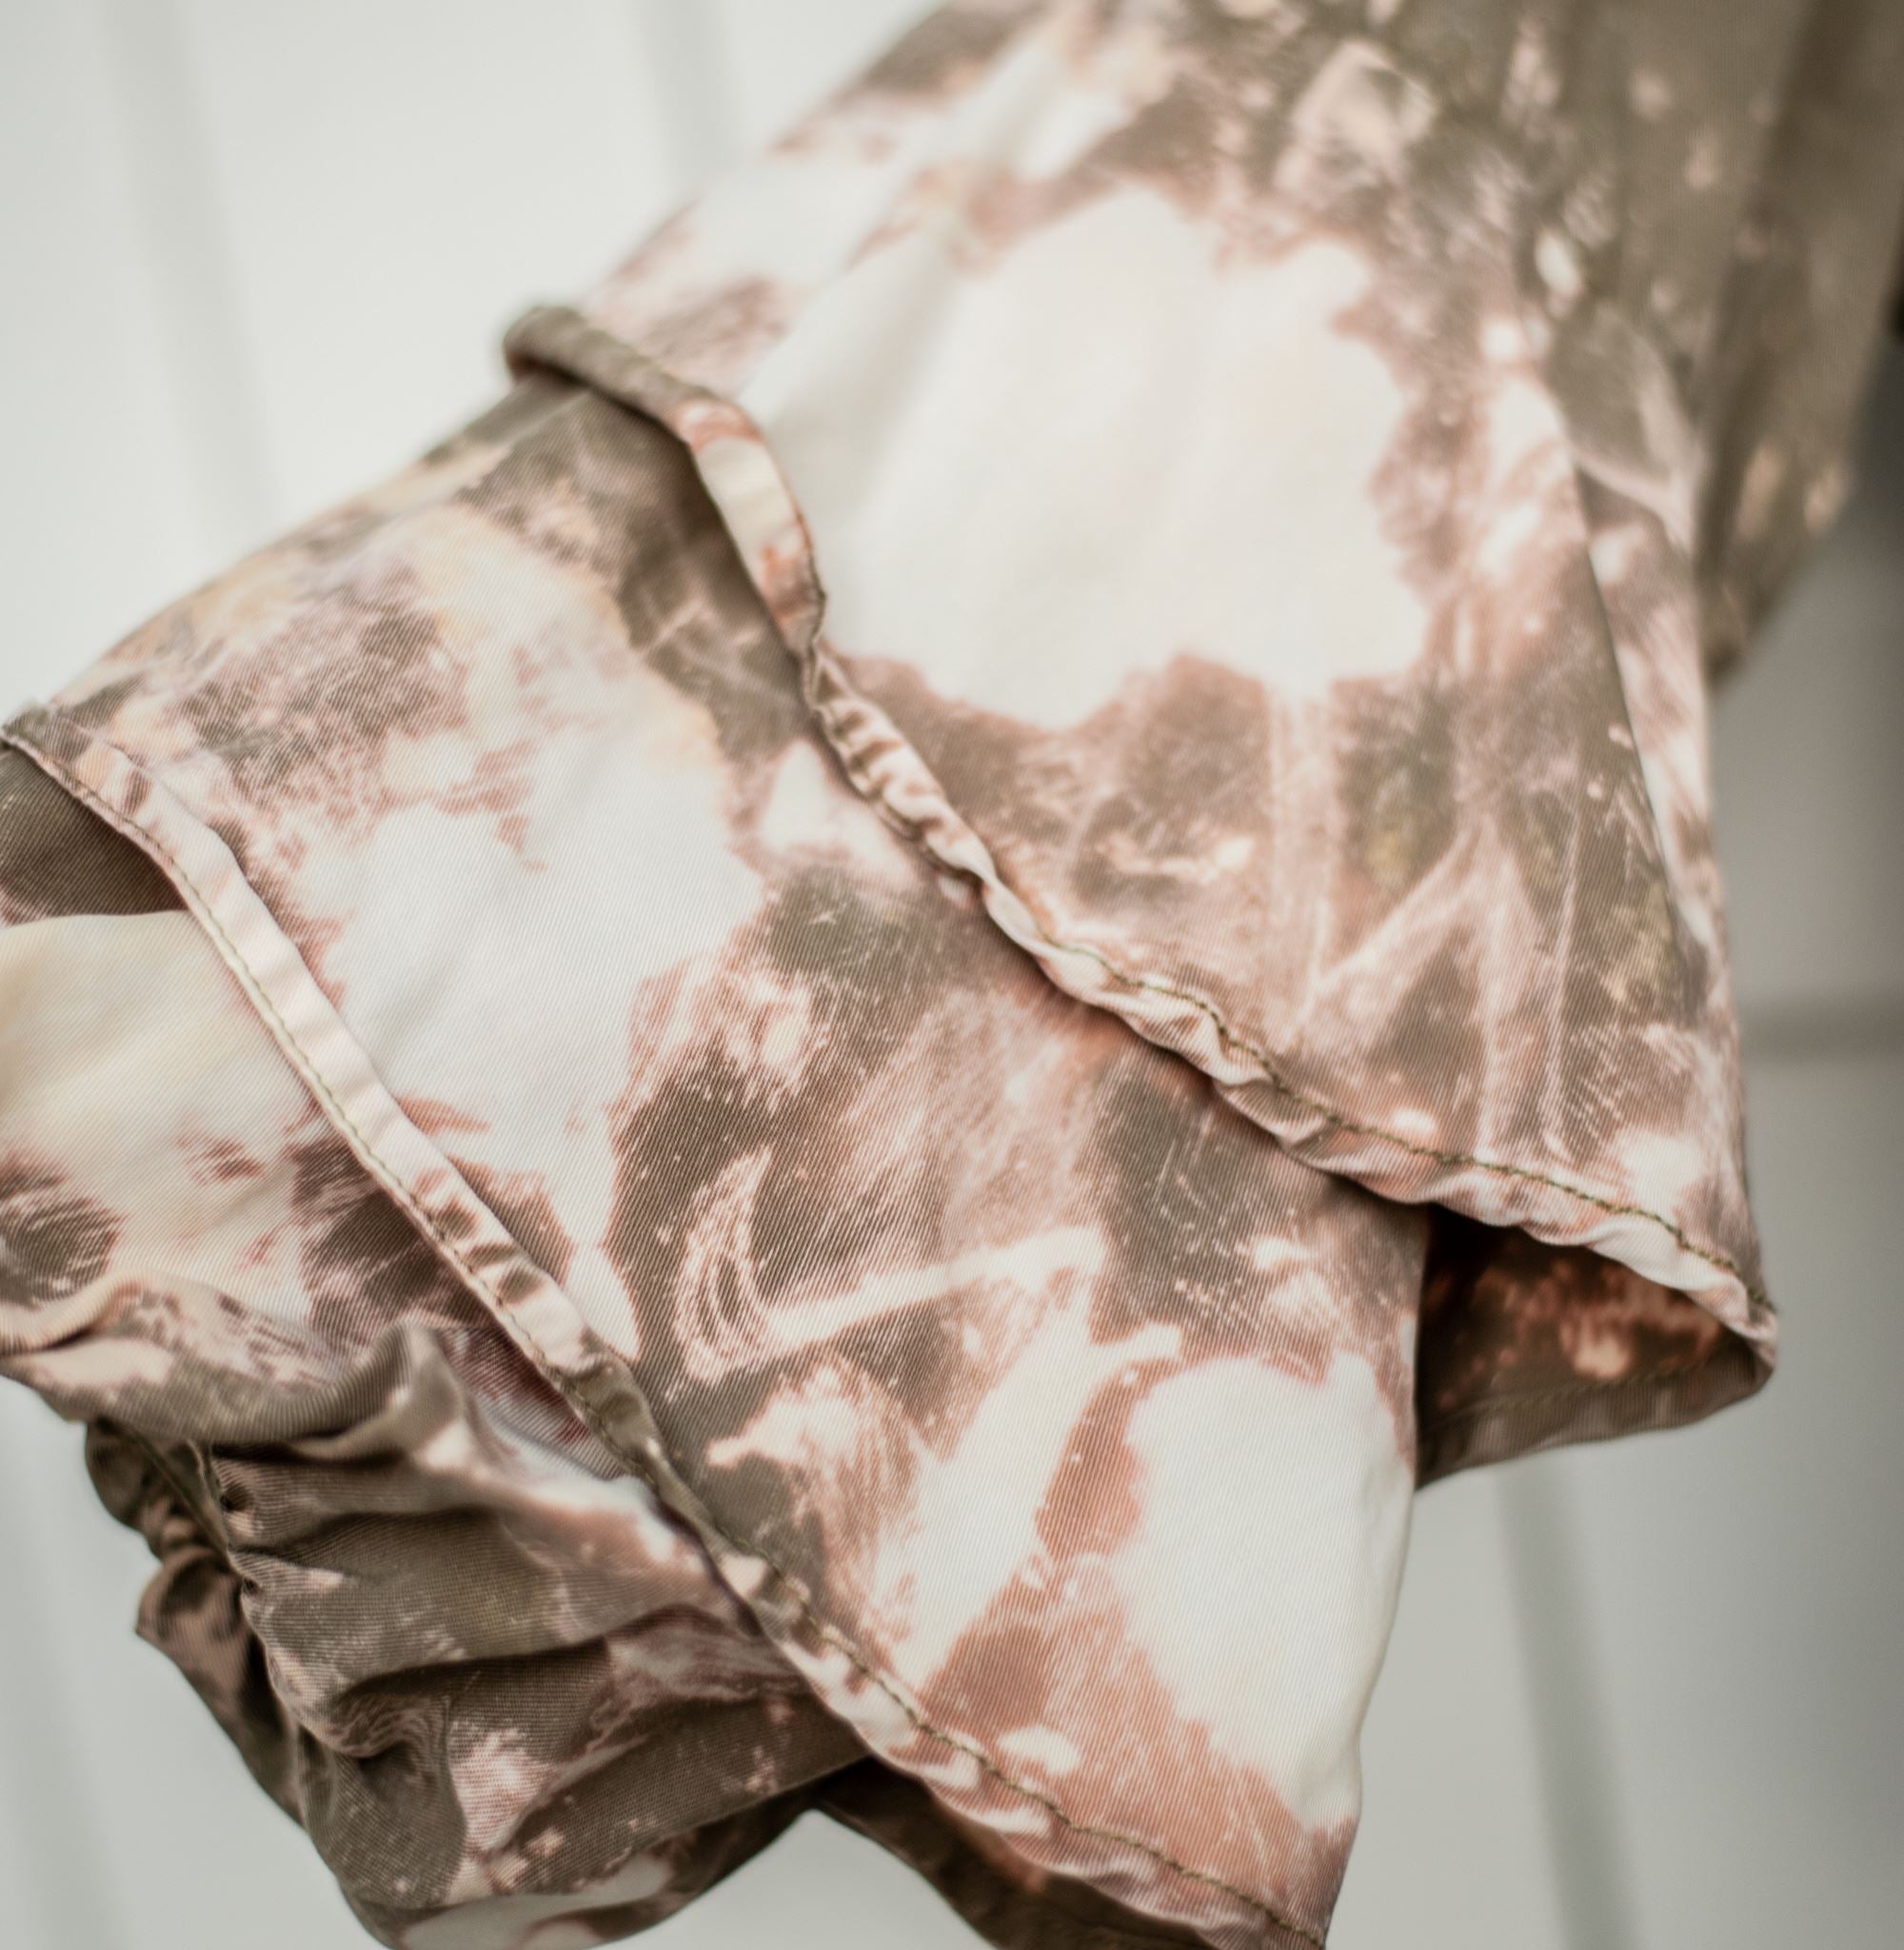 Rework Painters Ruffle Sleeves Bleached Dress Dresses Lara Dee Artistry 